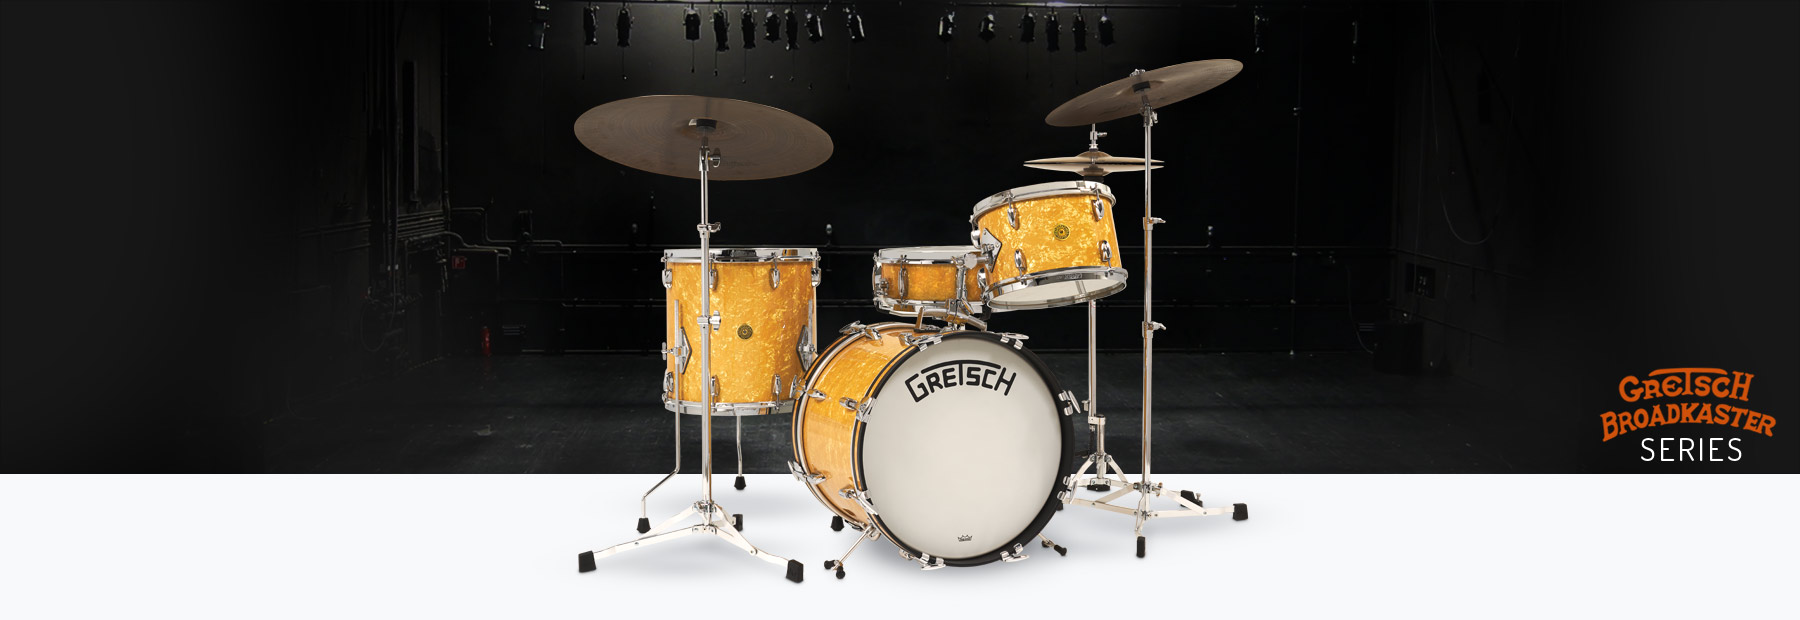 Gretsch Drums Broadkaster series